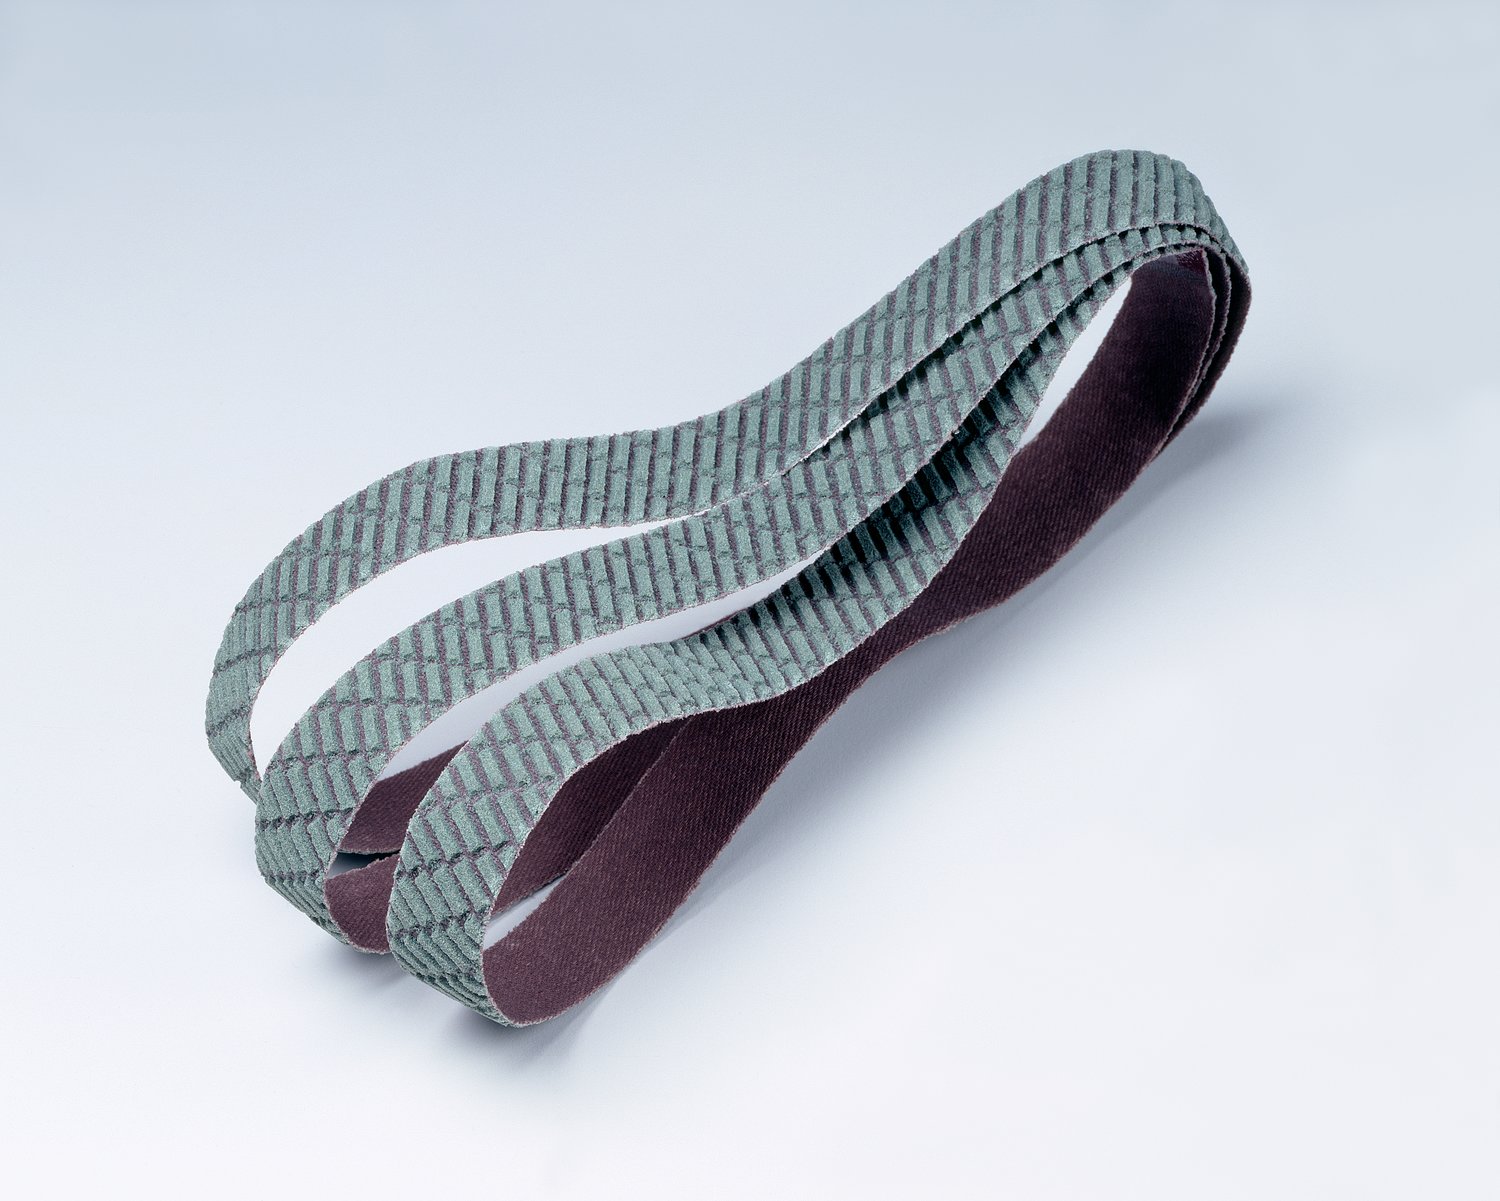 7010511595 - 3M Trizact Cloth Belt 327DC, A160 X-weight, 3-1/2 in x 15-1/2 in,
Film-lok, No Flex